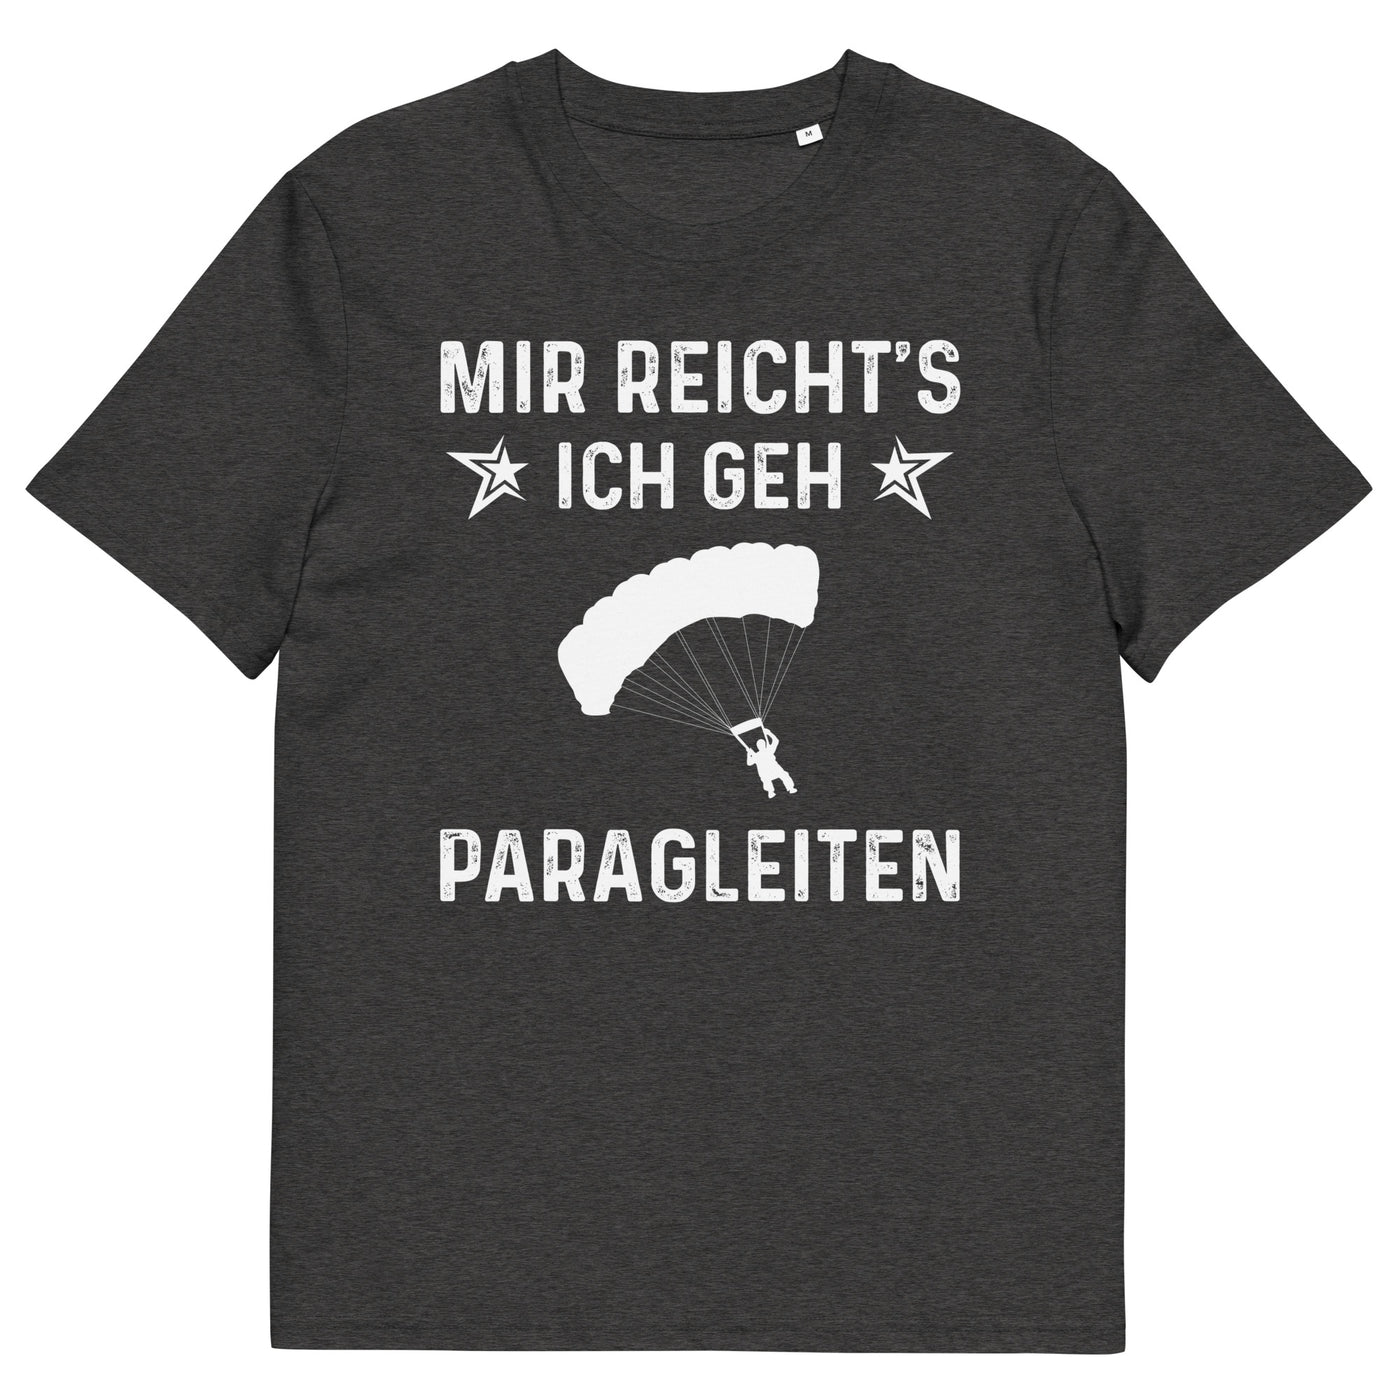 Mir Reicht's Ich Gen Paragleiten - Herren Premium Organic T-Shirt berge xxx yyy zzz Dark Heather Grey